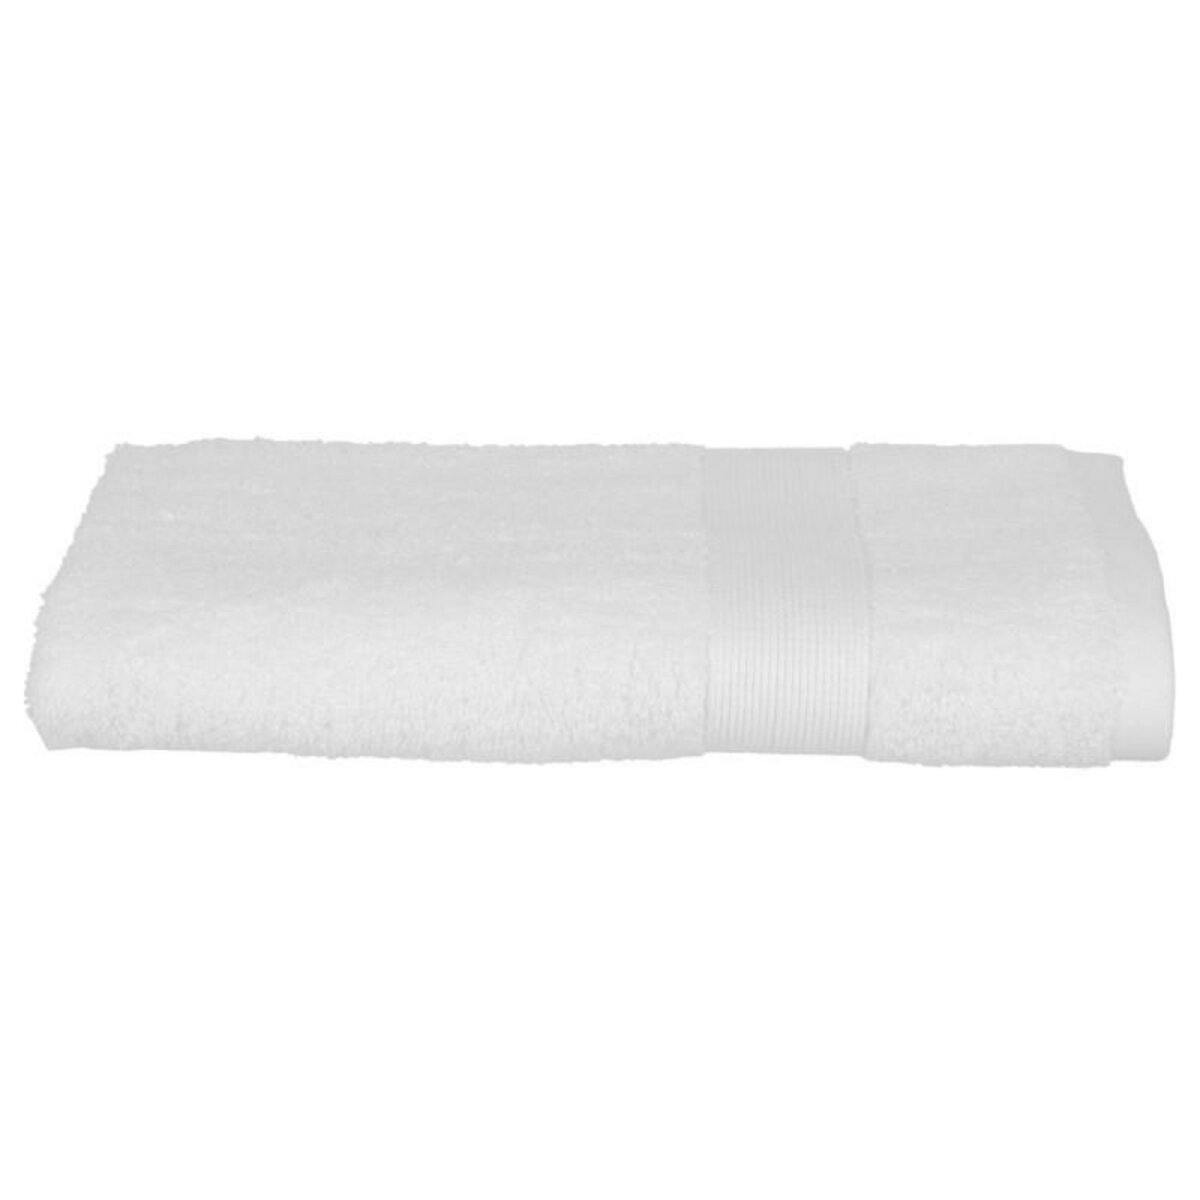  Serviette de Toilette  Confort  50x90cm Blanc